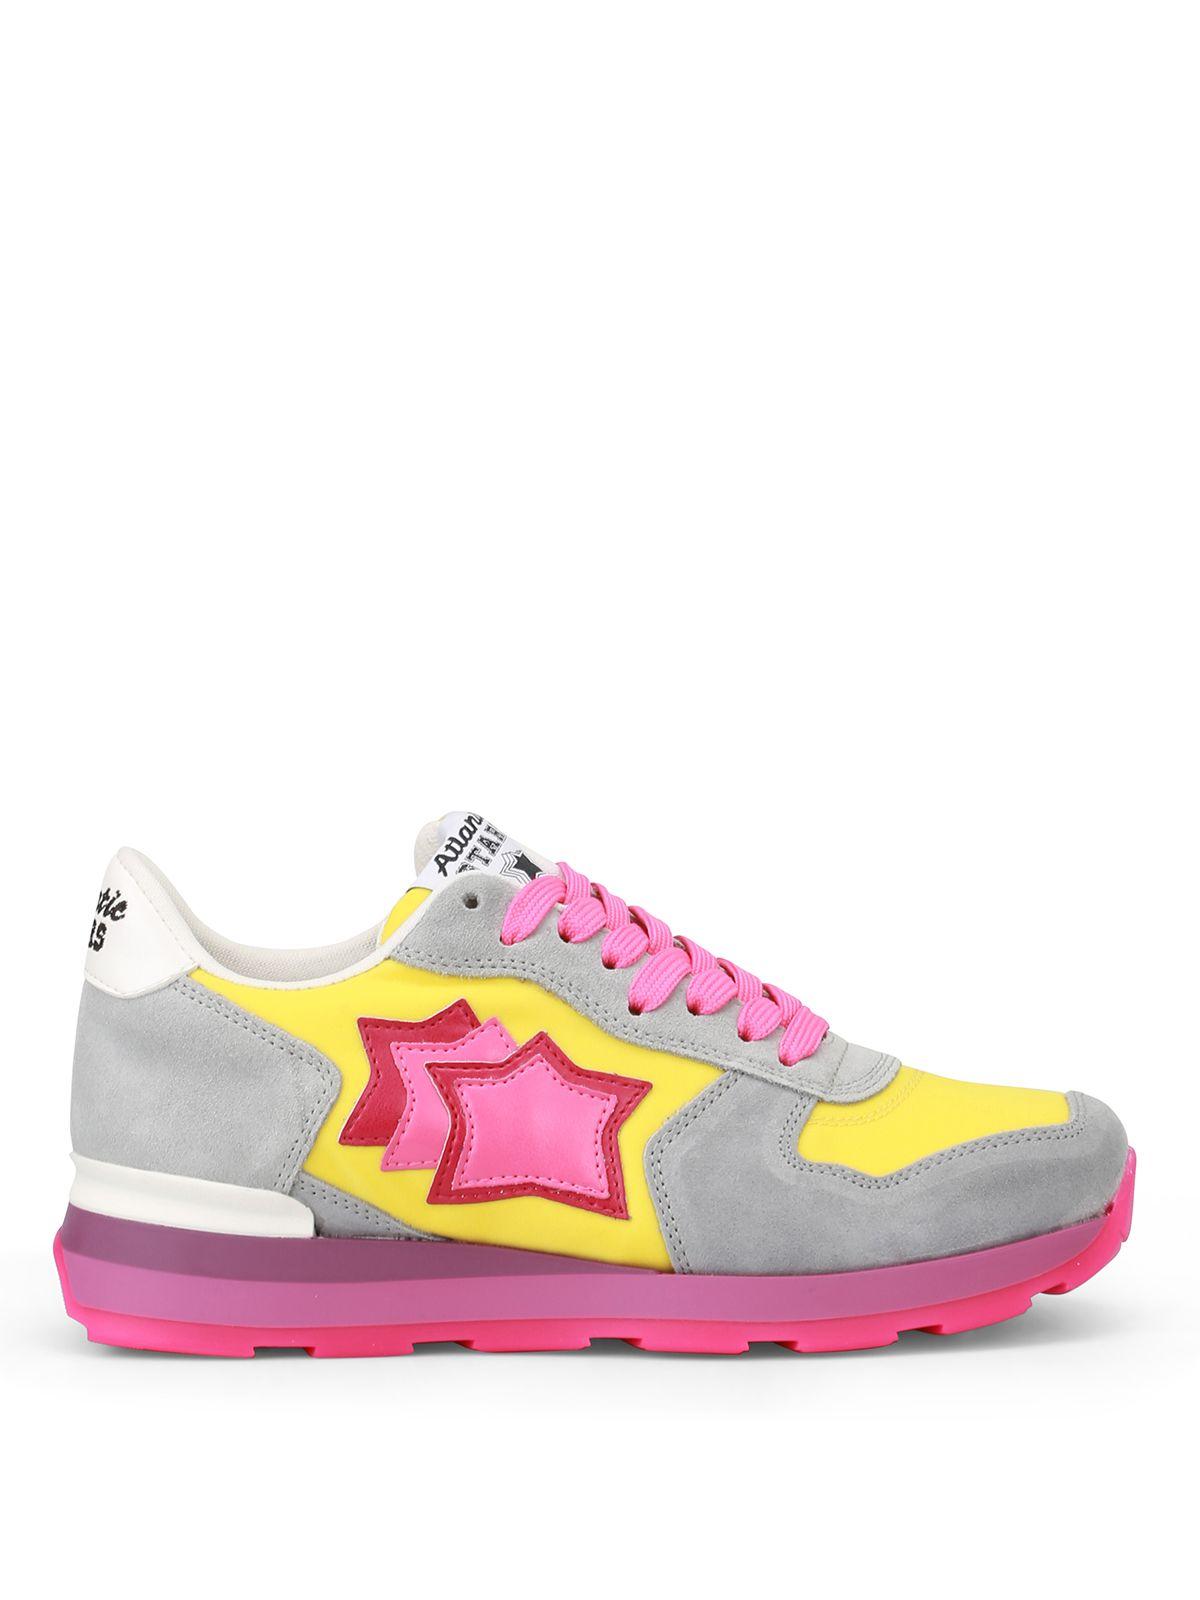 Atlantic Stars Vega Sneakers In Grey-pink | ModeSens